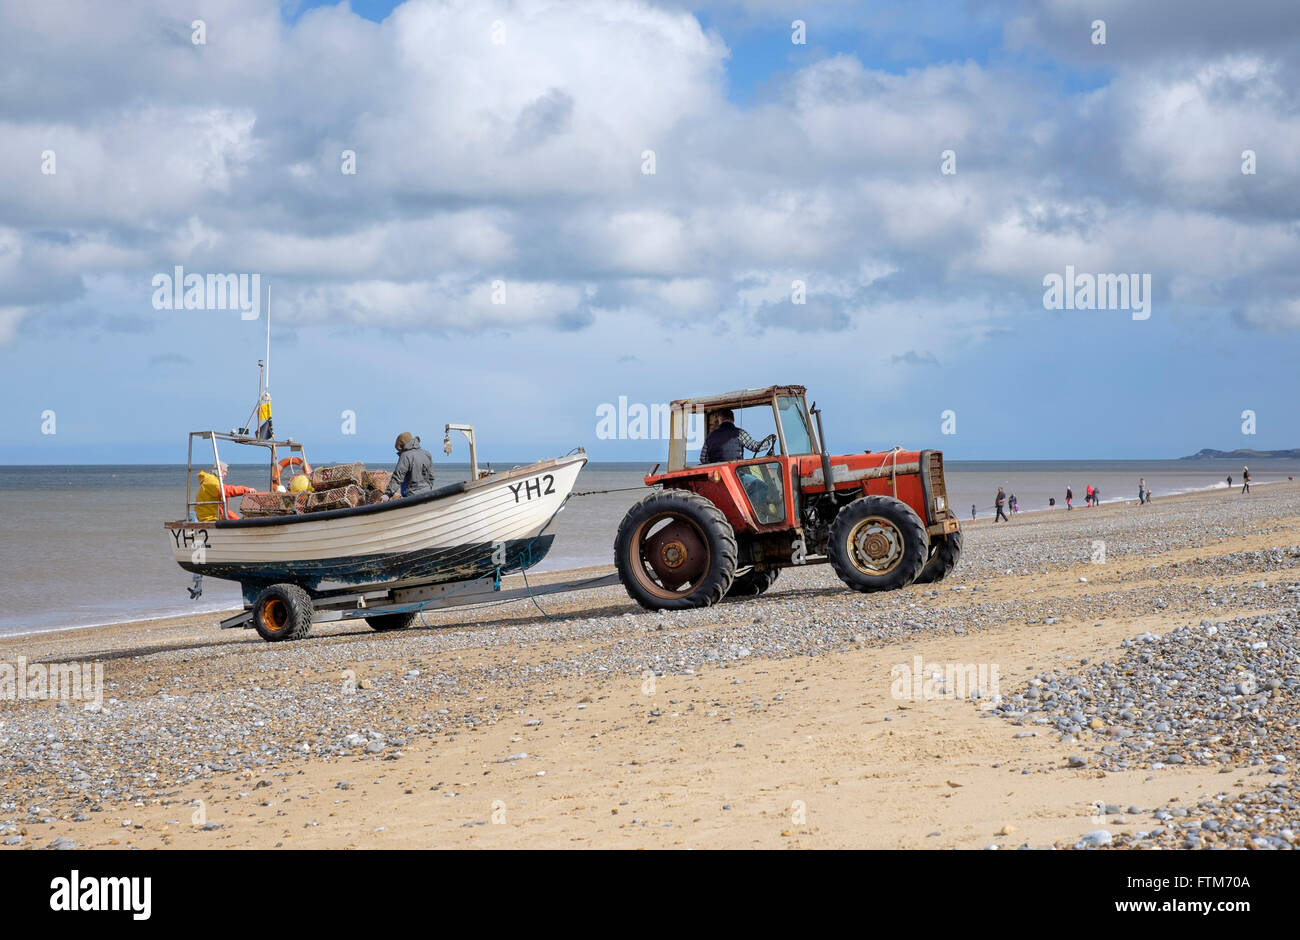 Le tracteur le lancement d'un bateau de pêche au homard/crabe pour aller la pêche côtière près de la mer, suivant le CLAJ Norfolk, England, UK Banque D'Images